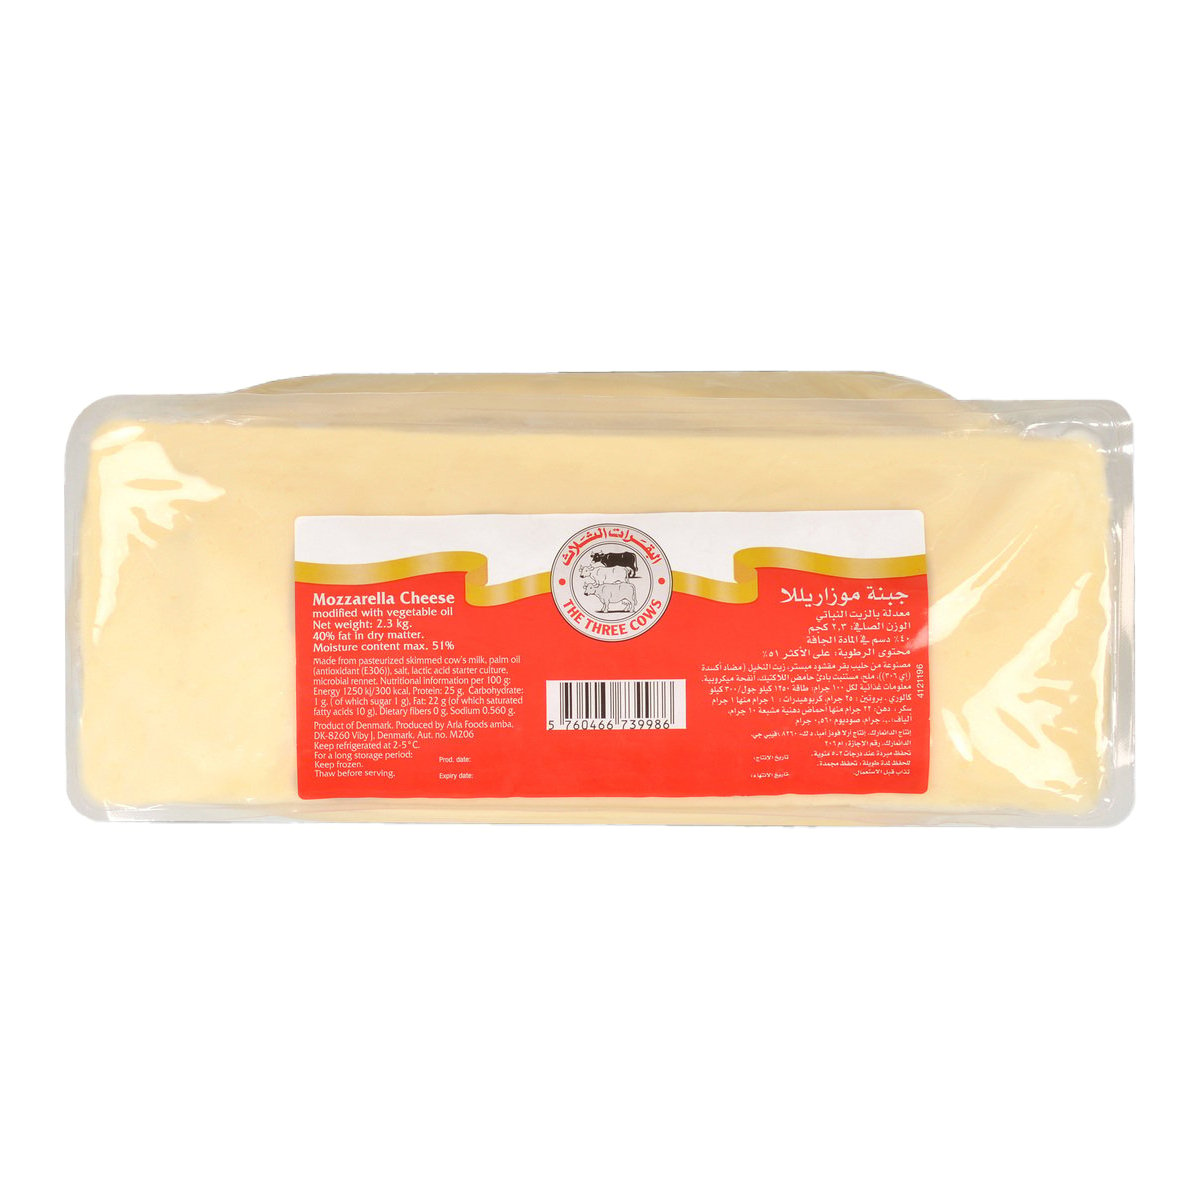 The Three Cows Mozzarella Cheese Slice 250 g